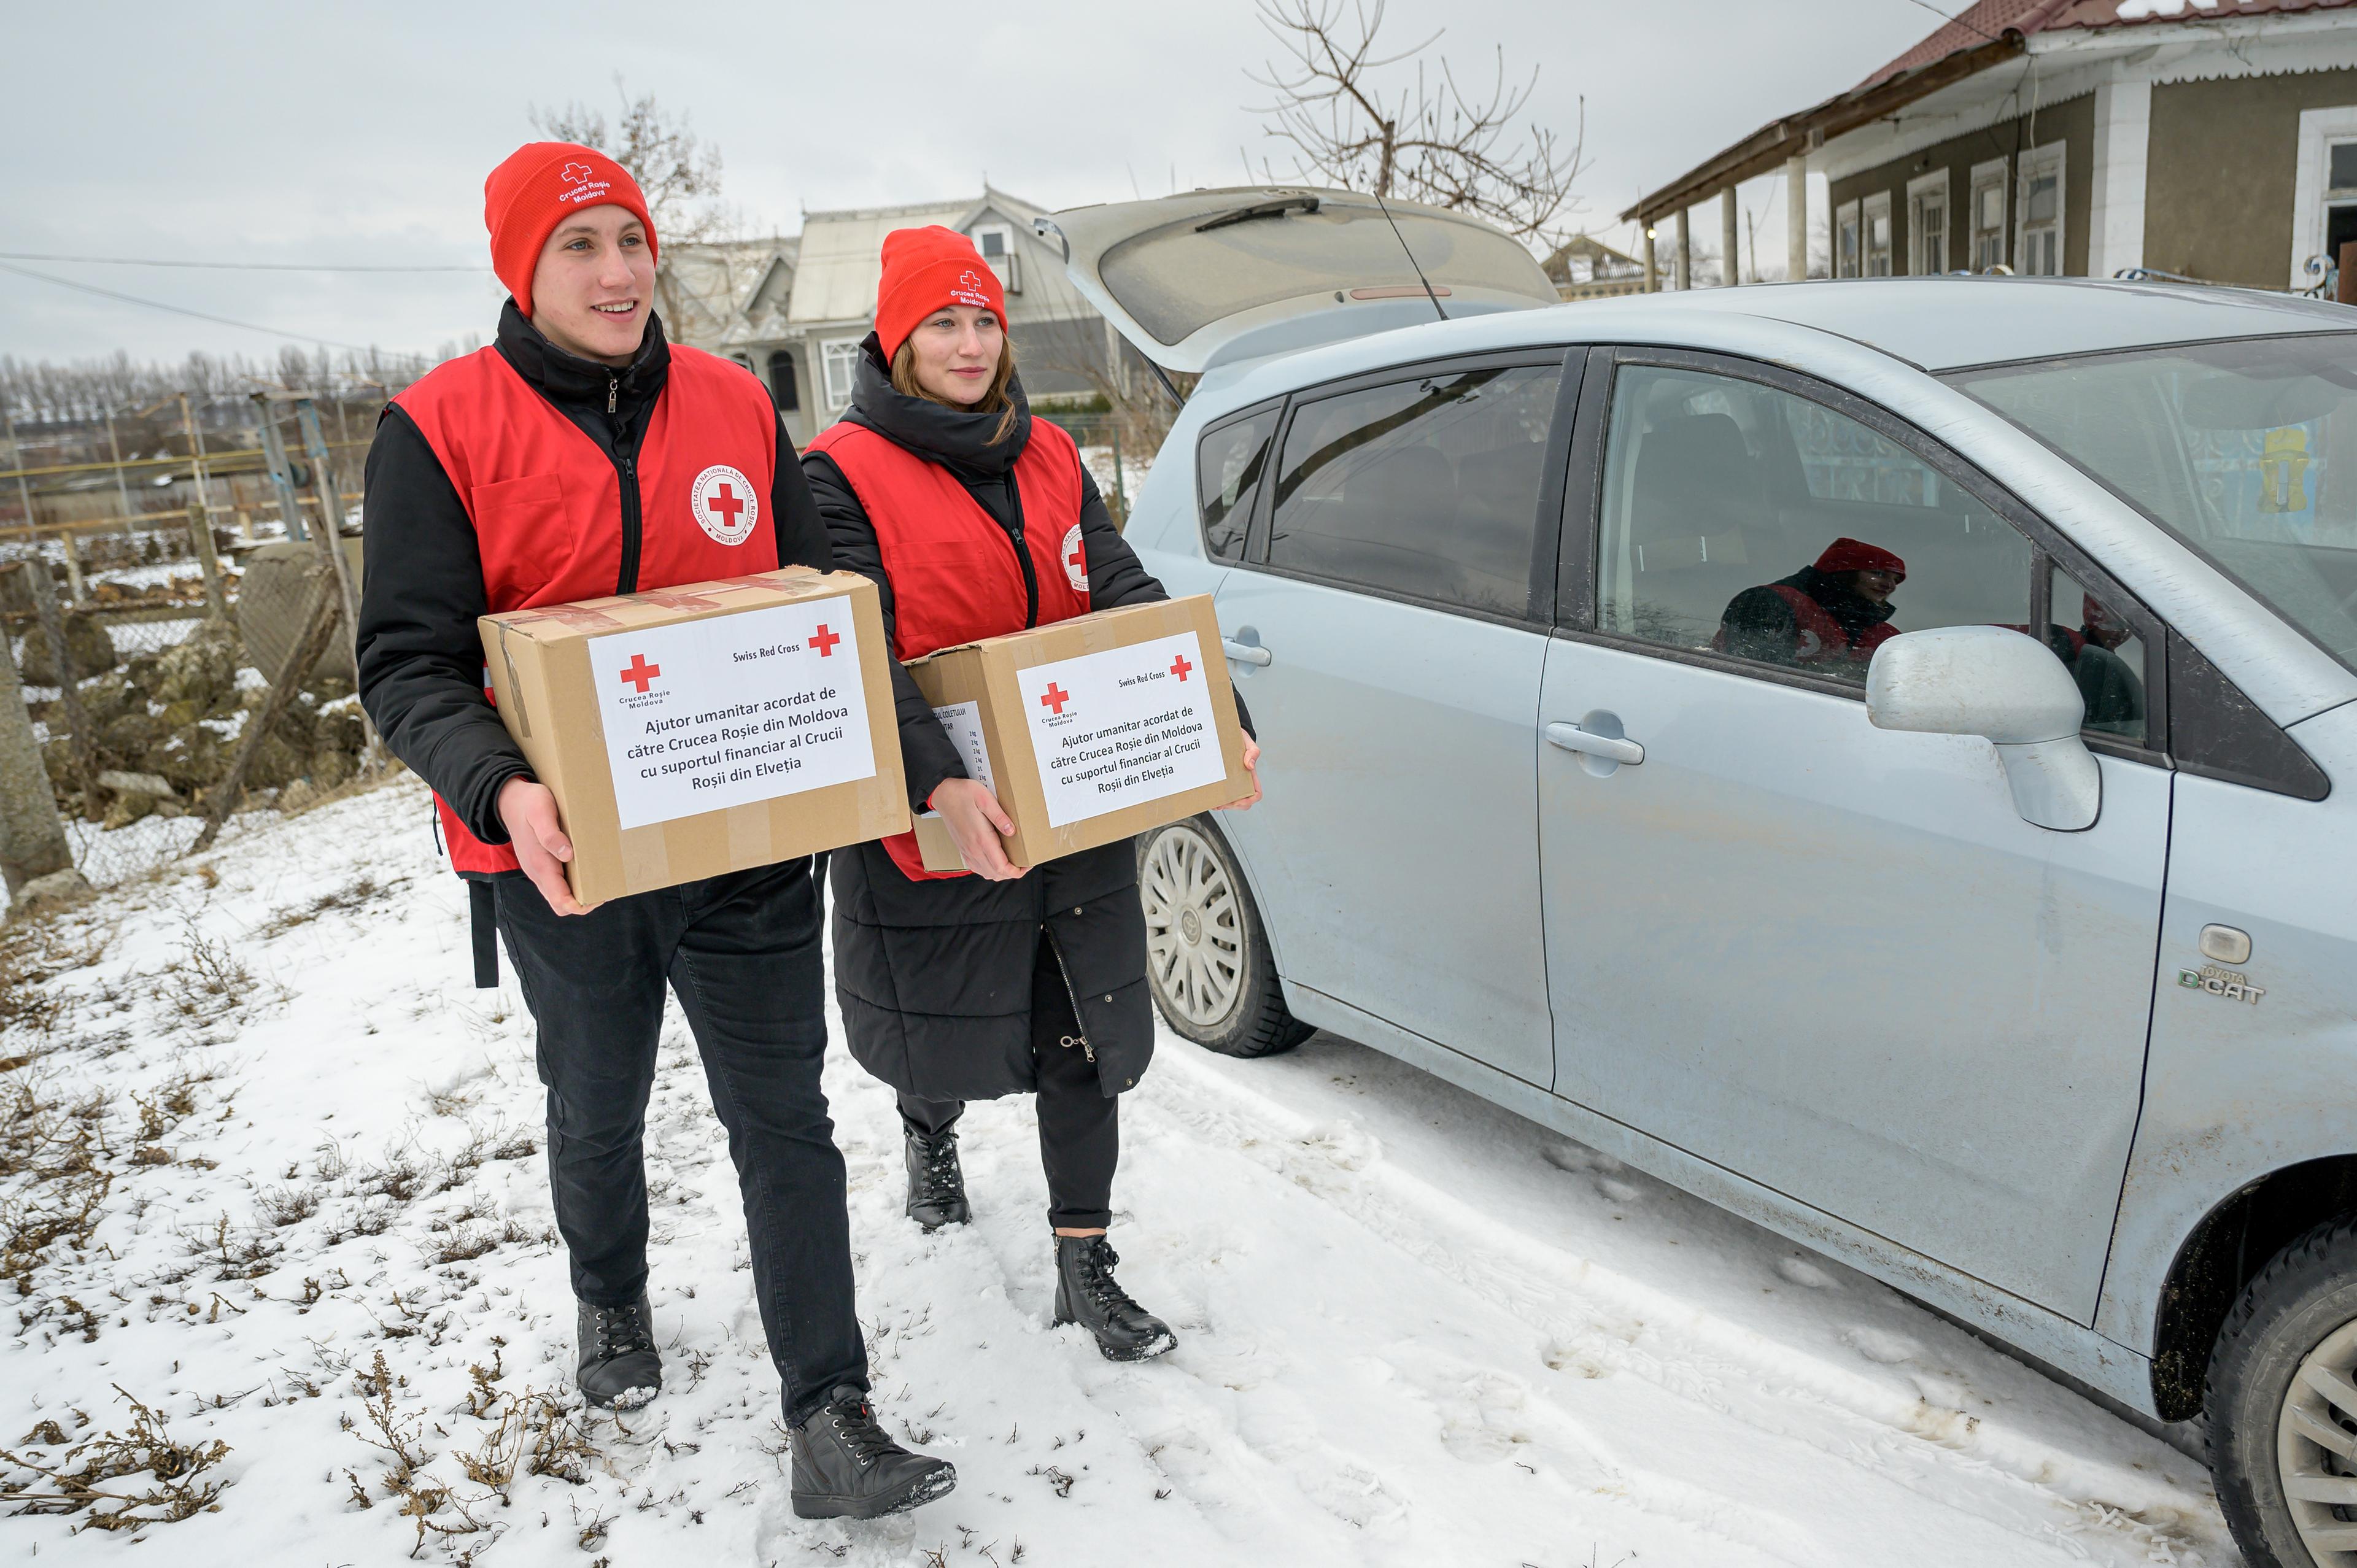 Zwei junge Erwachsene halten ein Paket in den Händen und laufen neben einem Auto her. Sie sind dick eingekleidet und tragen eine rote Weste und Mütze. Auf dem Boden liegt Schnee.